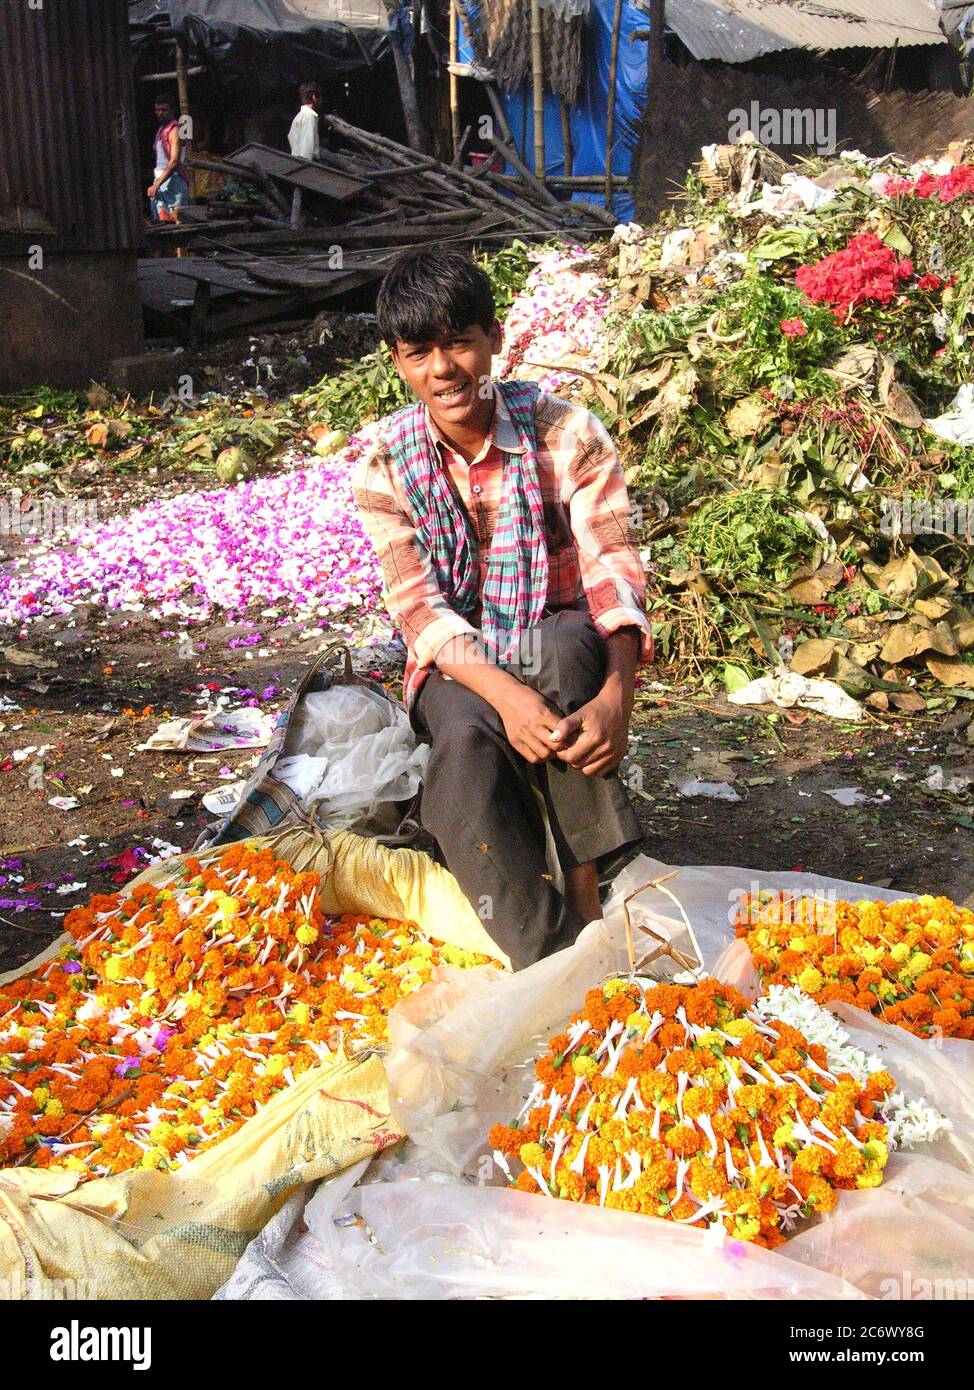 Un vendeur au marché aux fleurs de Mullickghaat, l'un des plus anciens marchés aux fleurs de Kolkata, en Inde. 5 novembre 2007. Banque D'Images